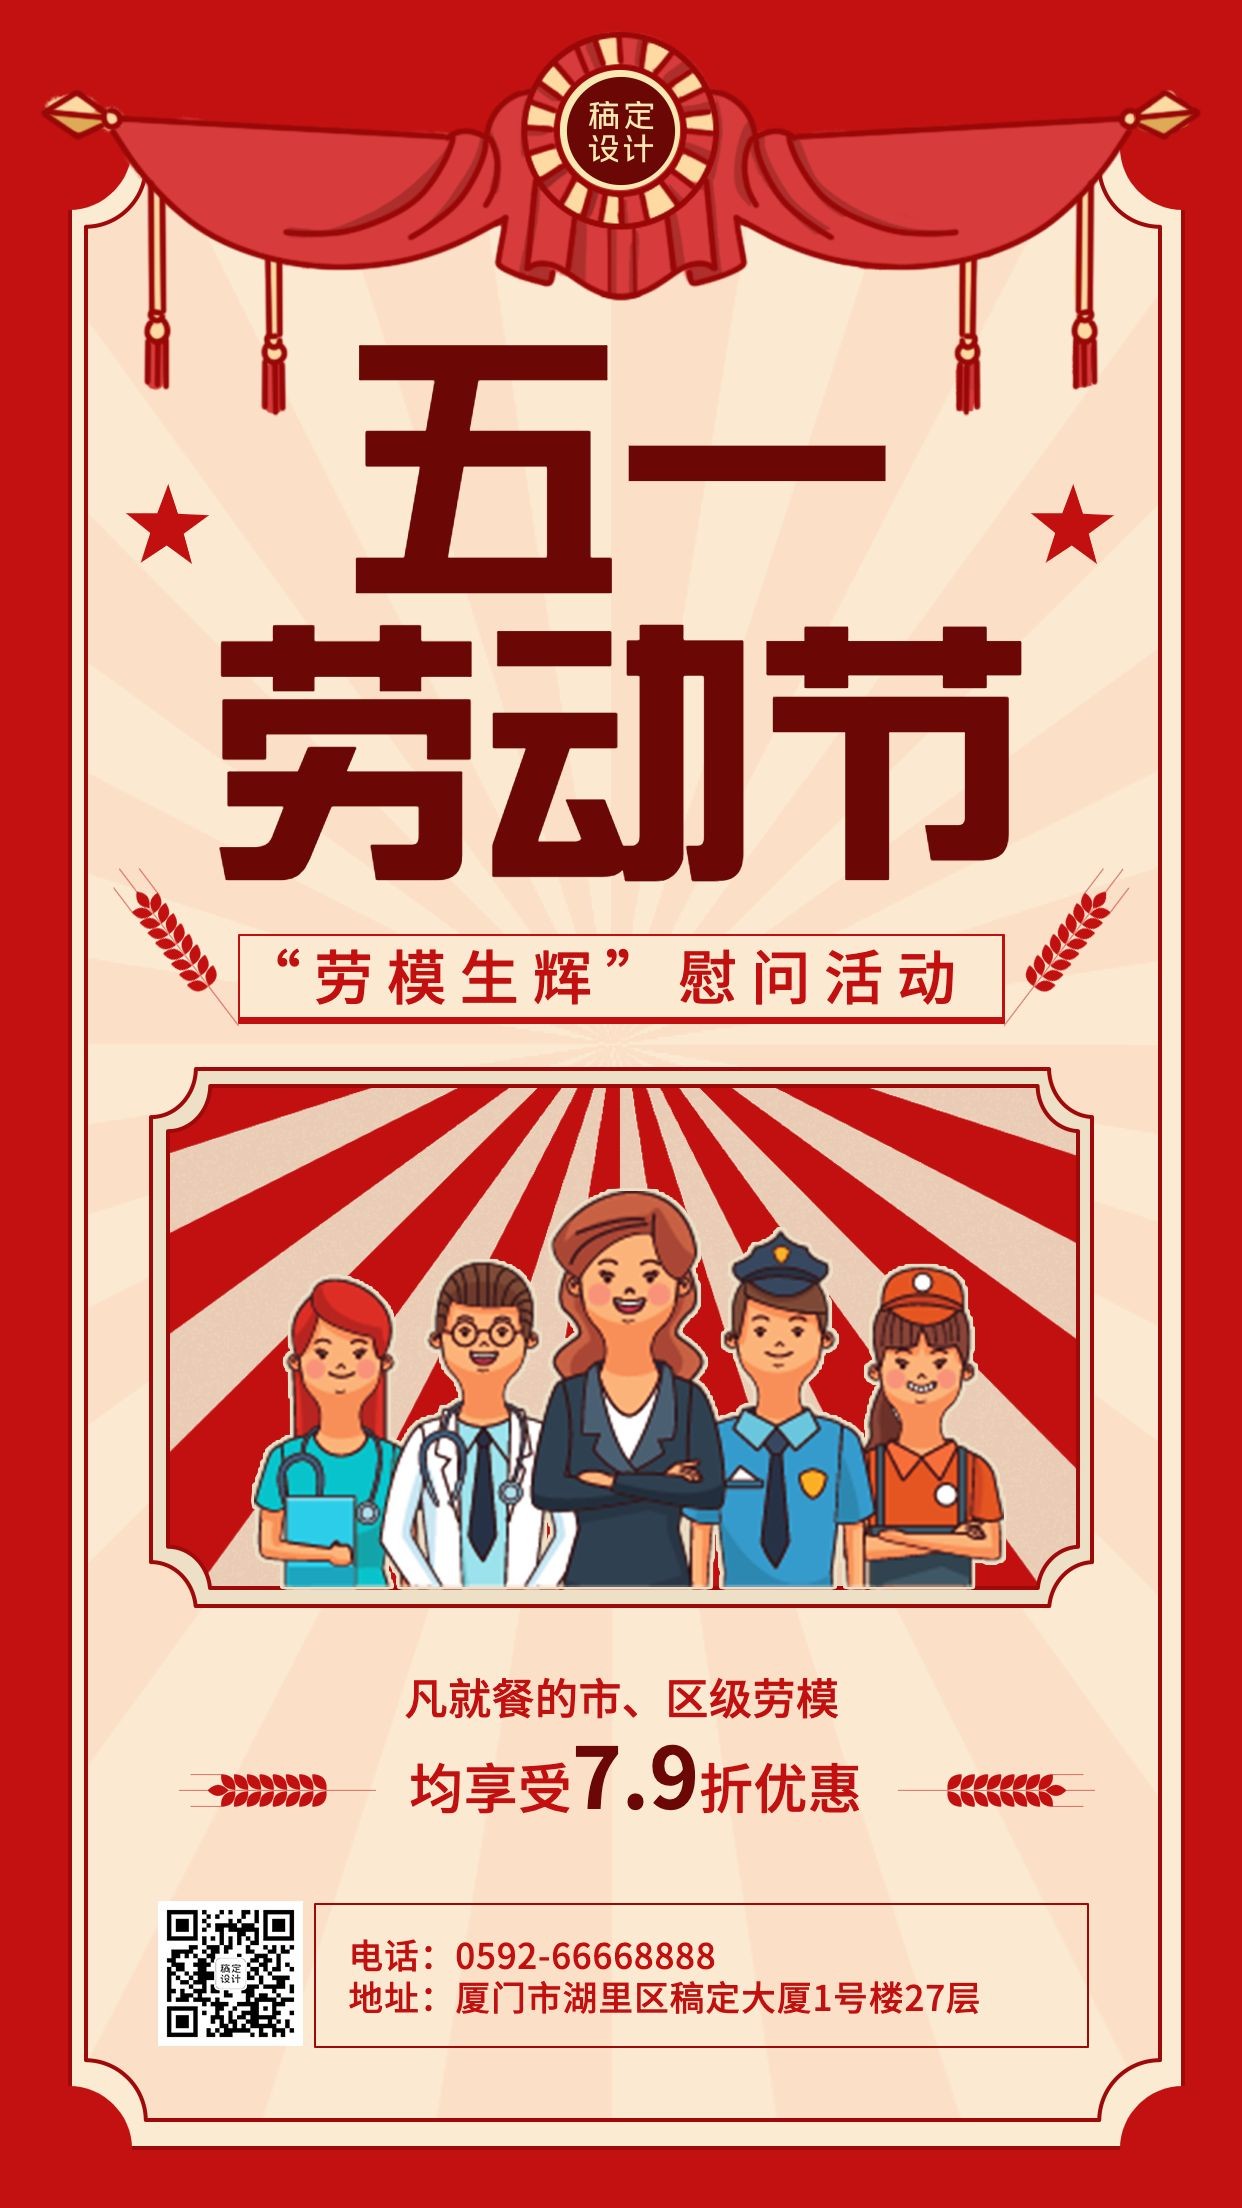 劳动节节日促销排版手机海报预览效果